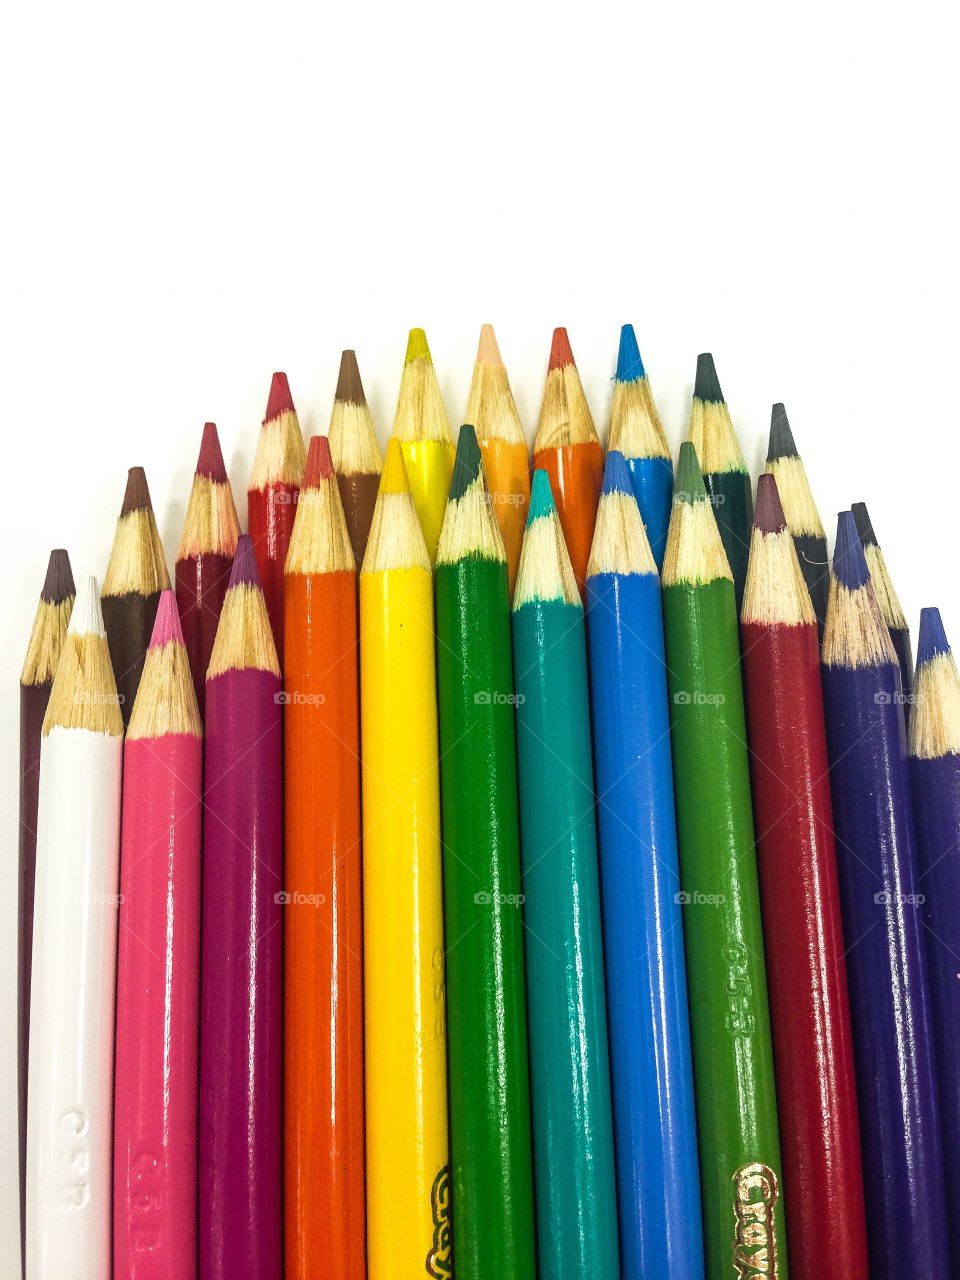 Colored pencils. Art school work